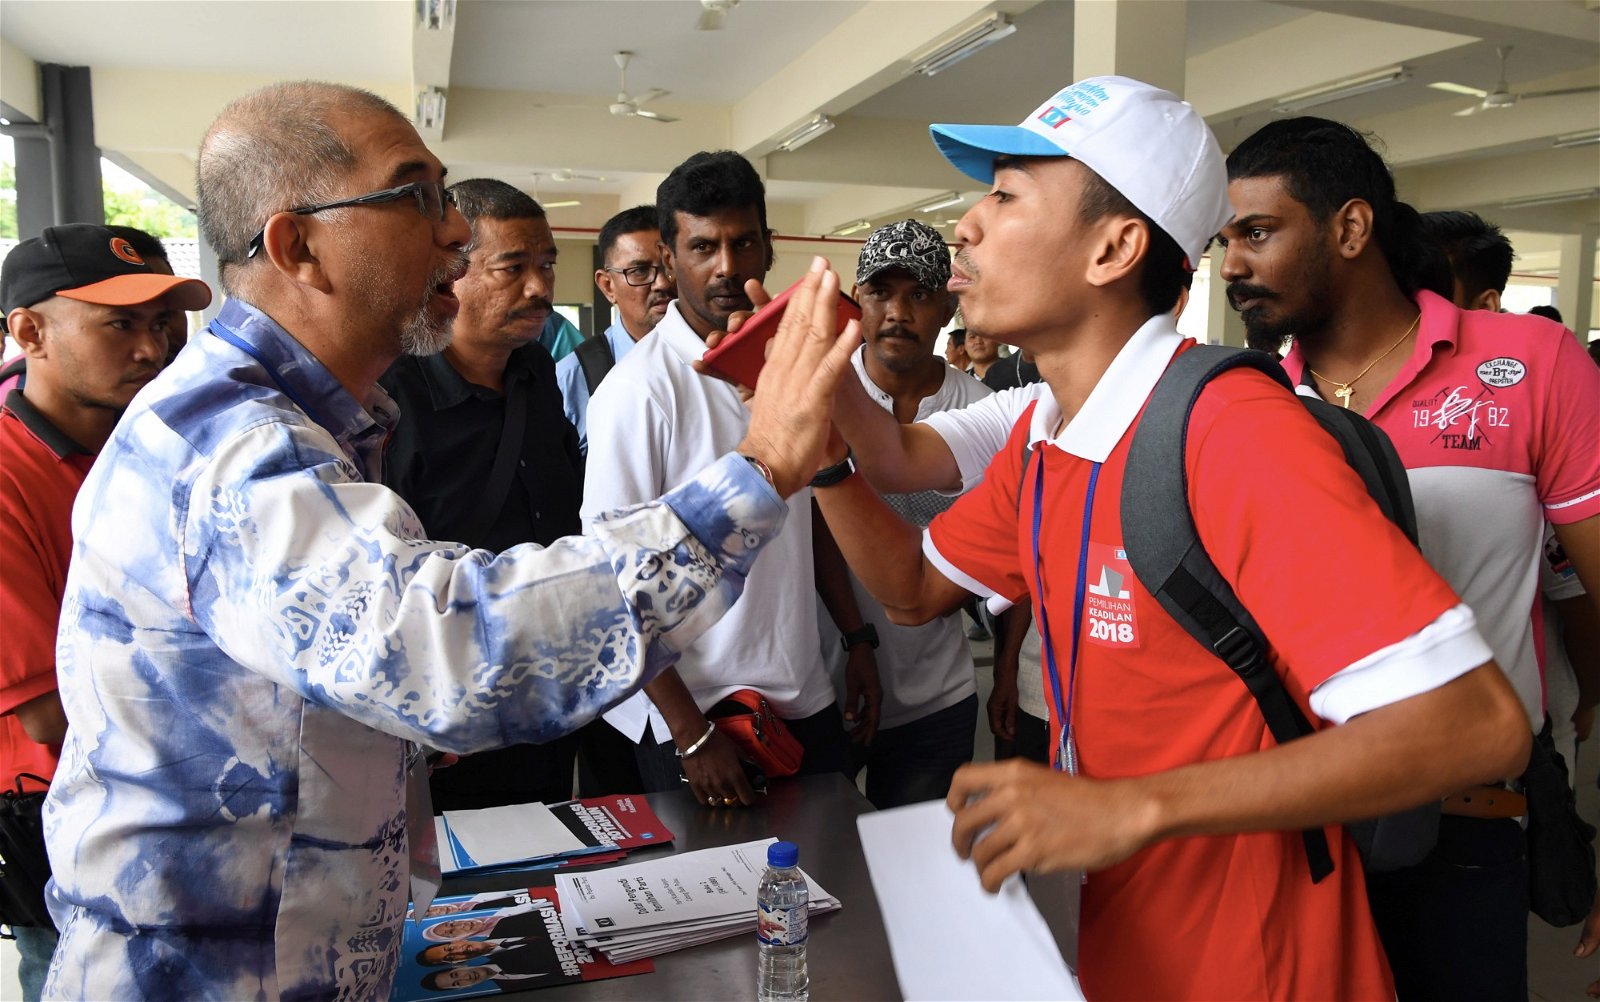 来自公正党的旅游部副部长莫哈末峇迪亚（左），准备在槟城浮罗山背一个投票中心投票时，发现其名字竟没在选民册内，一度引起他的不满。不过，他较后已顺利投票。